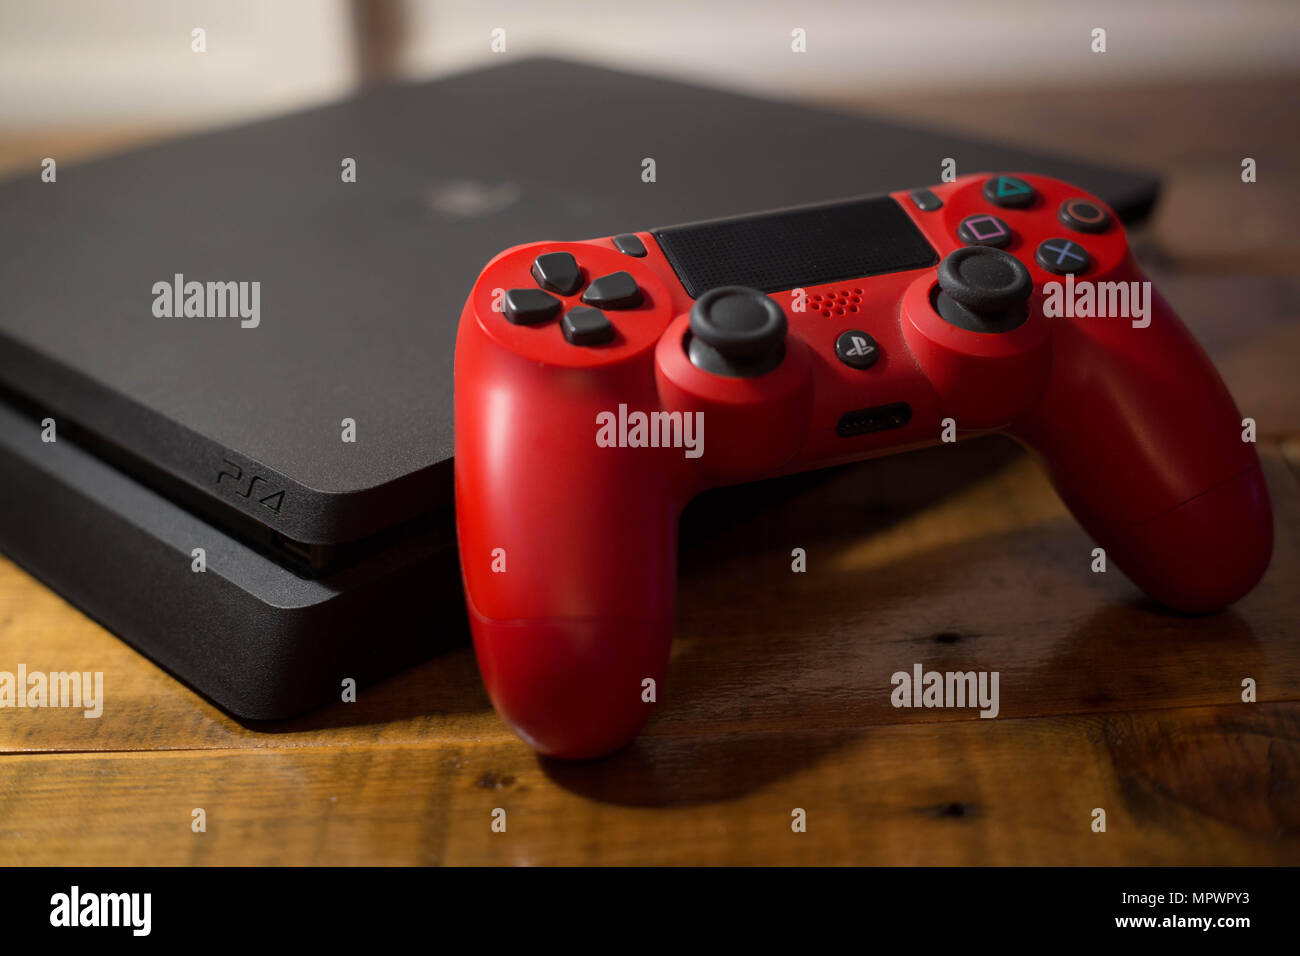 Una Sony PlayStation 4 consola de videojuegos con un controlador  inalámbrico rojo junto a ella. La PlayStation 4 o PS4 se conoce como inicio  de la octava generación de consola de video